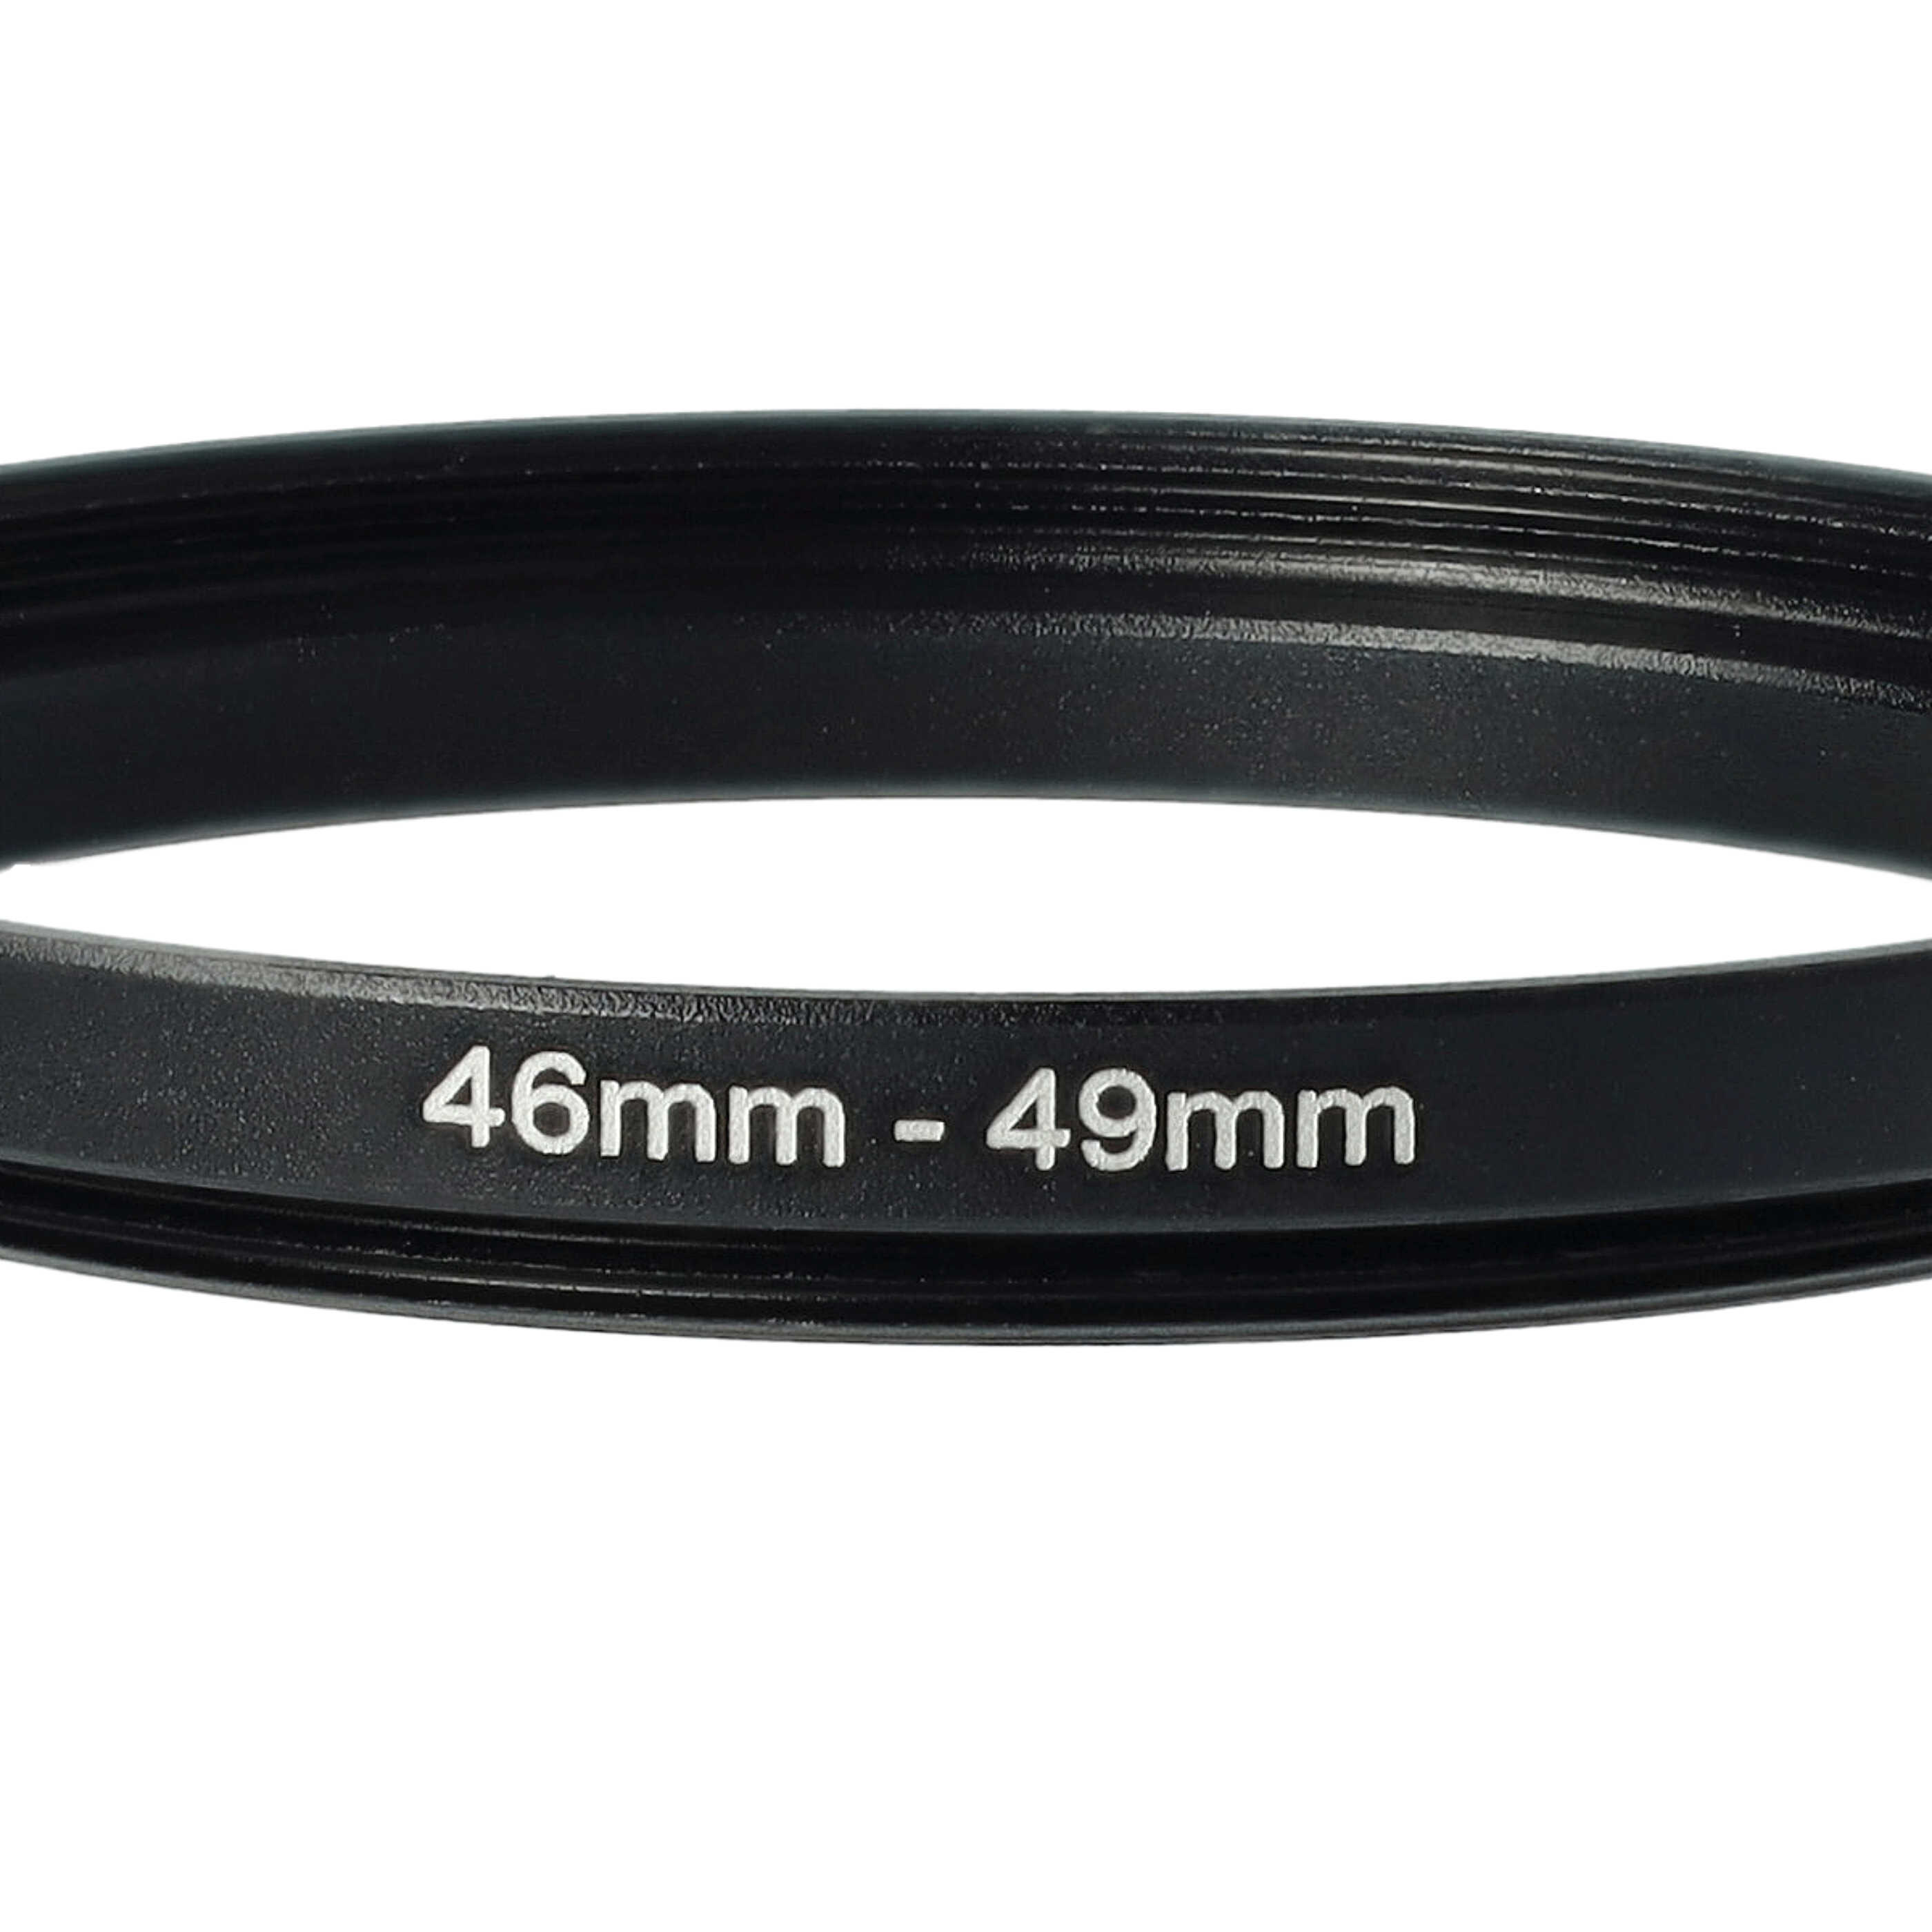 Bague Step-up 46 mm vers 49 mm pour divers objectifs d'appareil photo - Adaptateur filtre